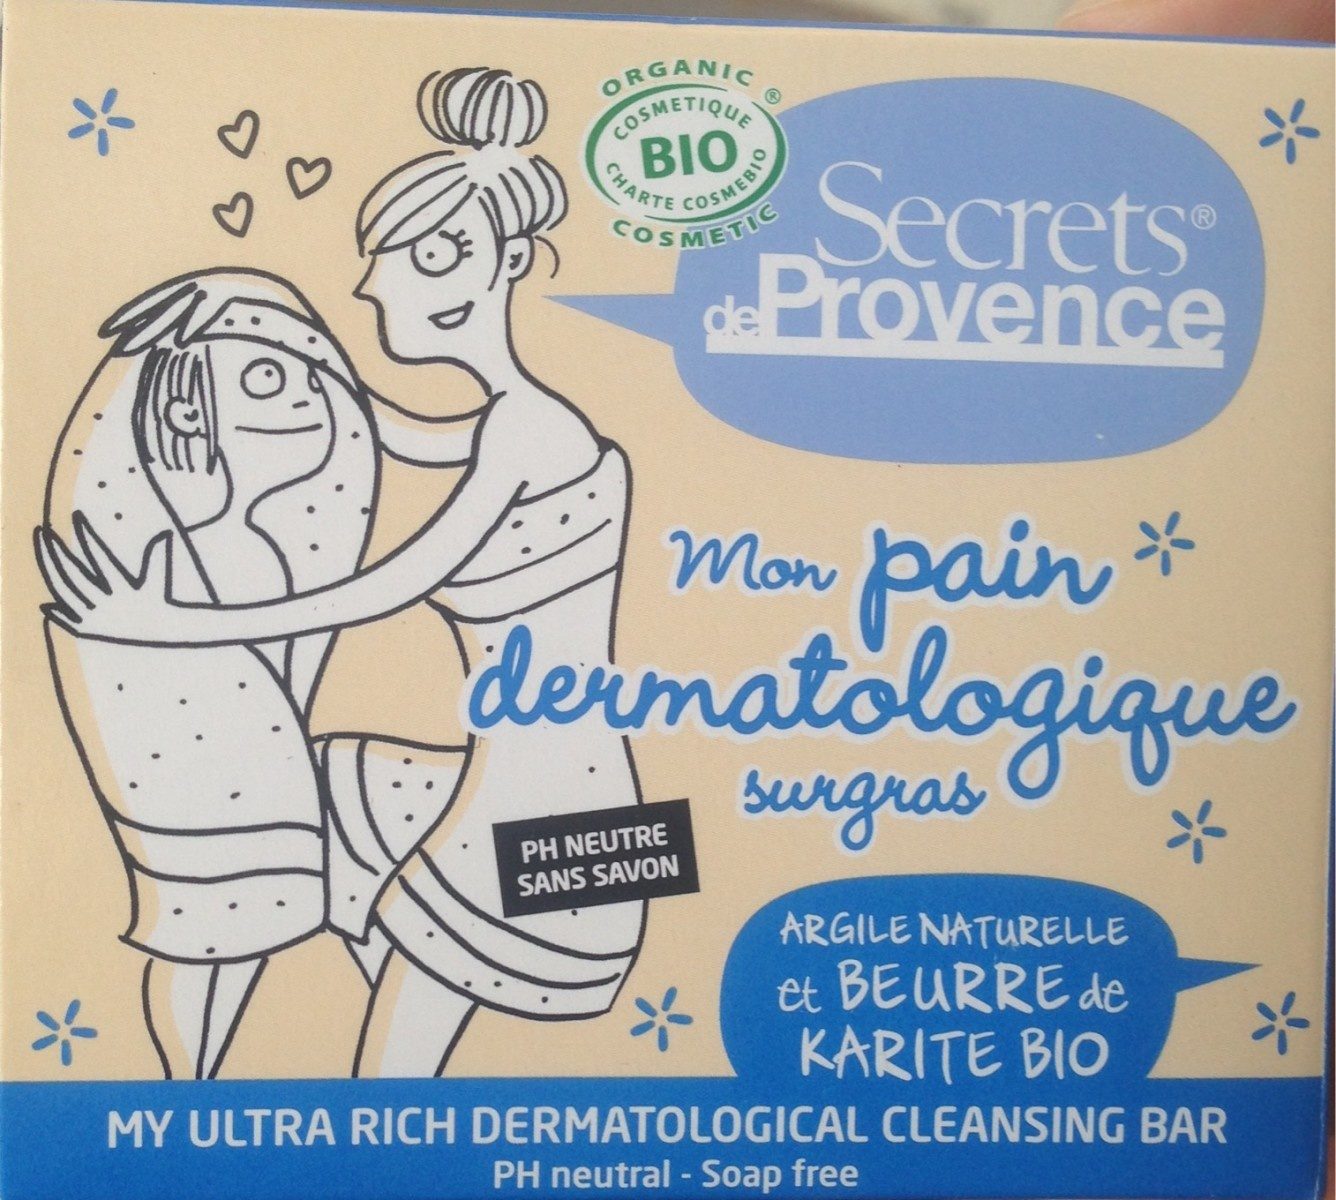 Pain Dermatologique Sugras Bio - 製品 - fr